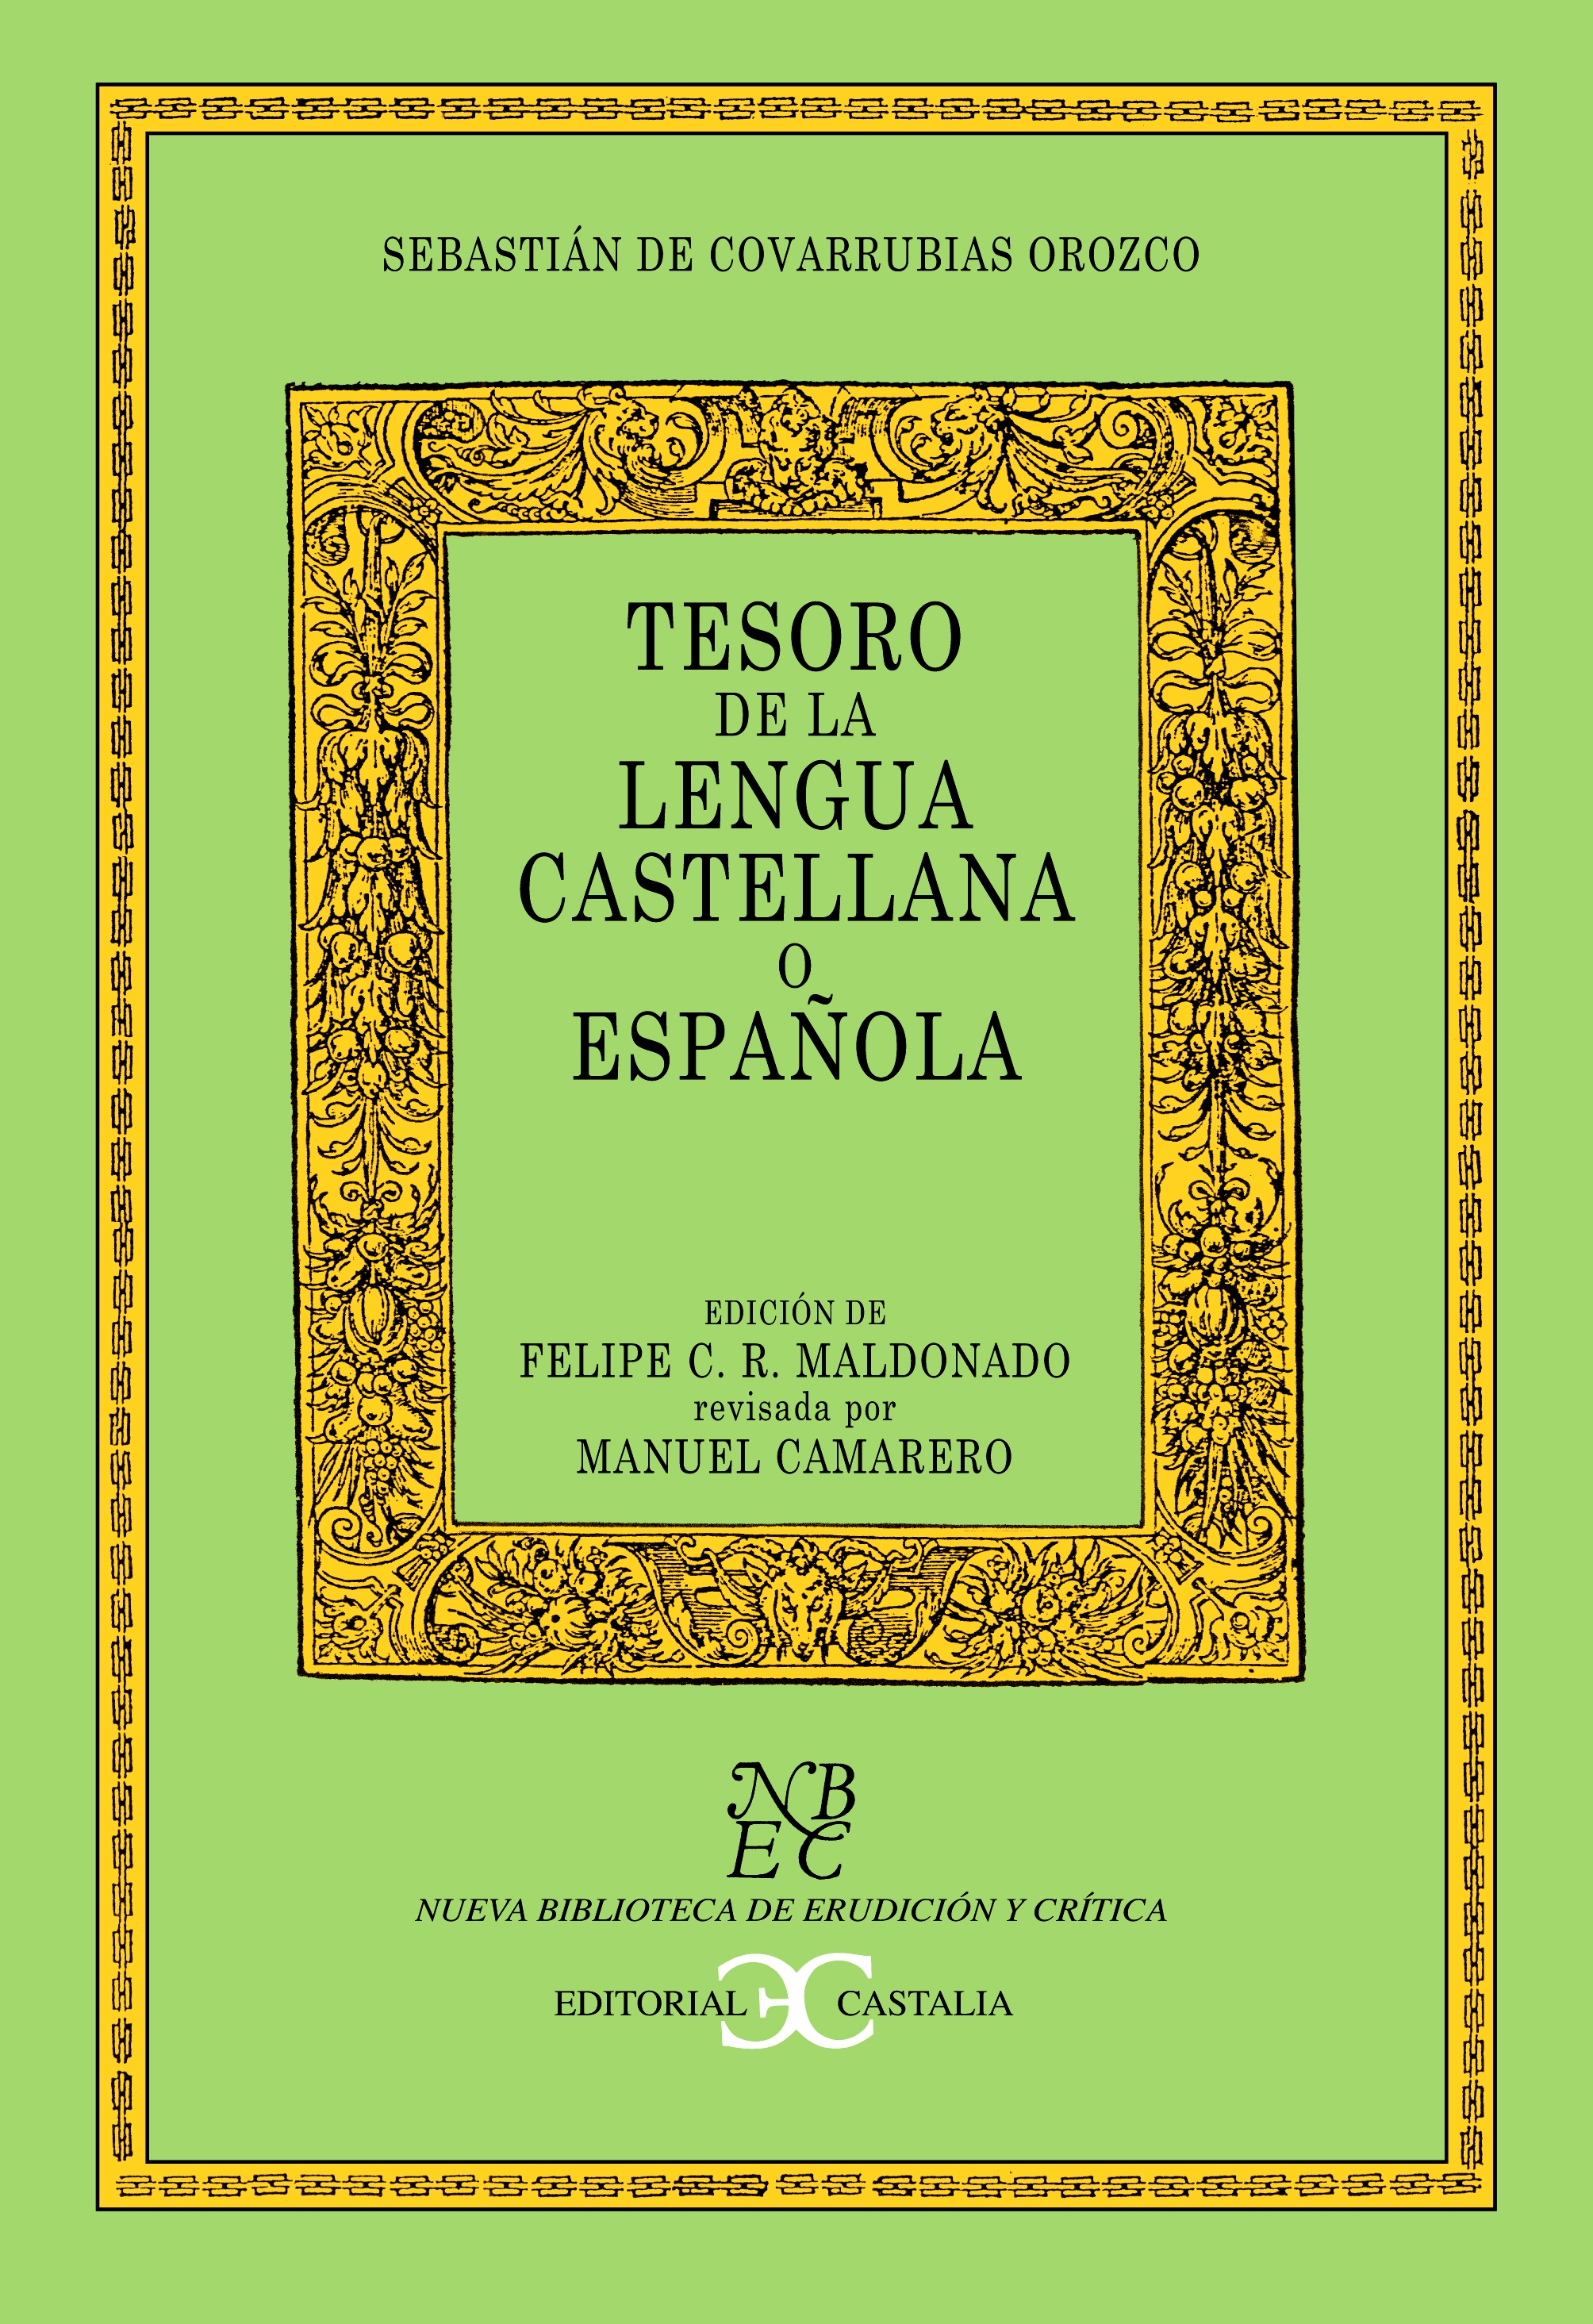 Tesoro de la Lengua española o castellana